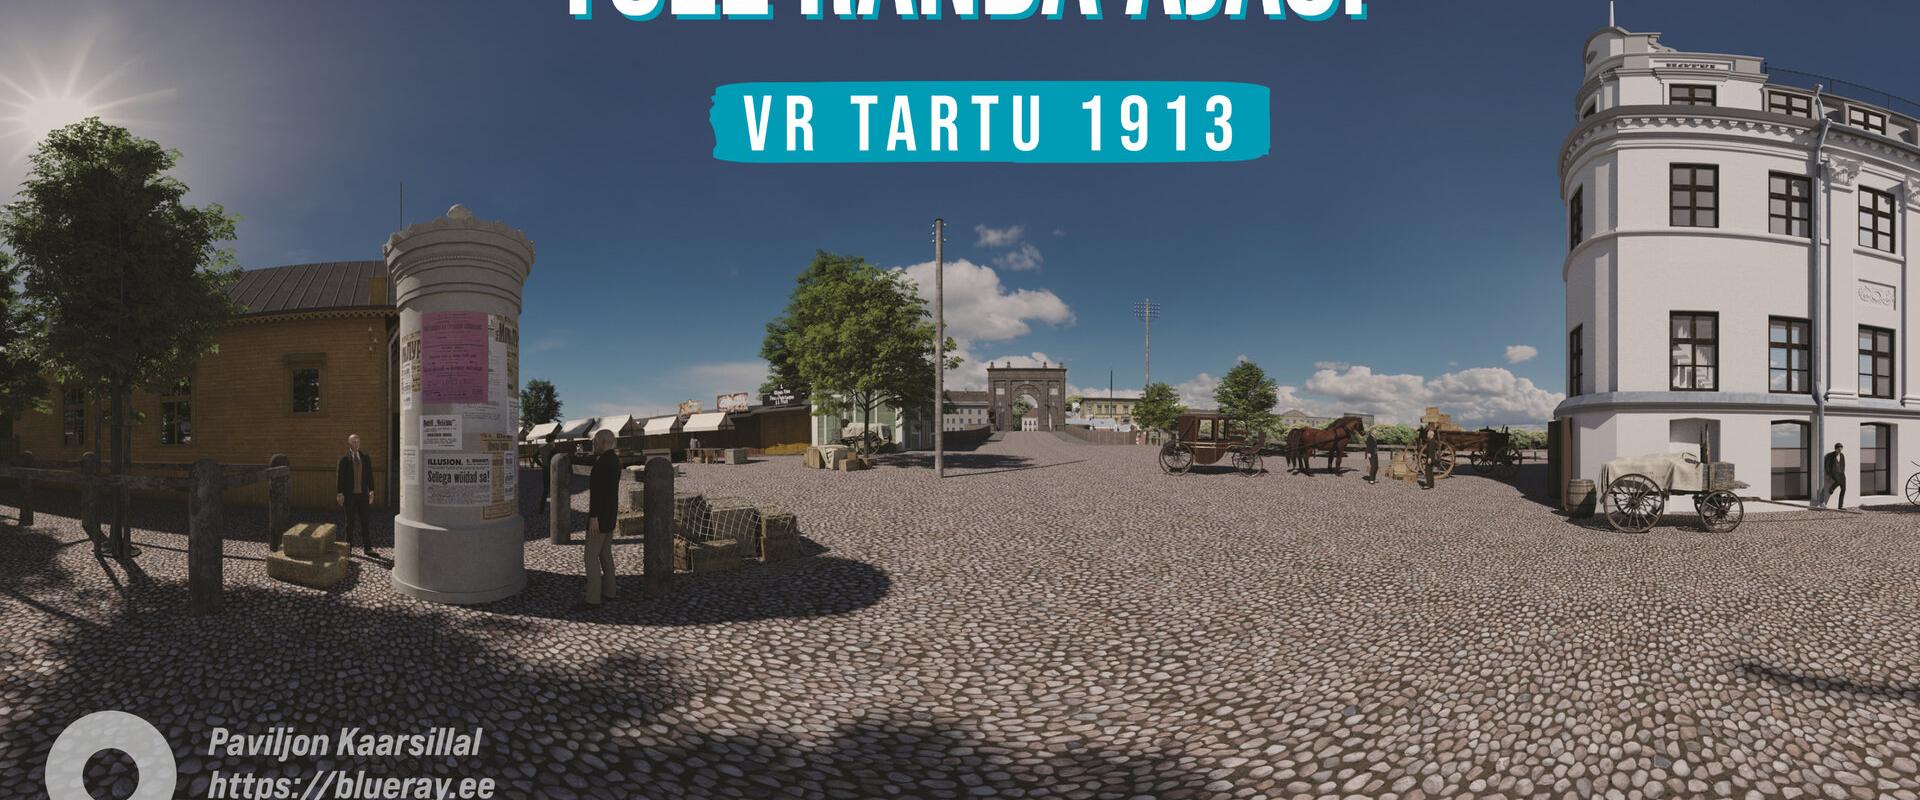 Ajaloolise Tartu virtuaaltuur „VR Tartu 1913“ audiogiidiga